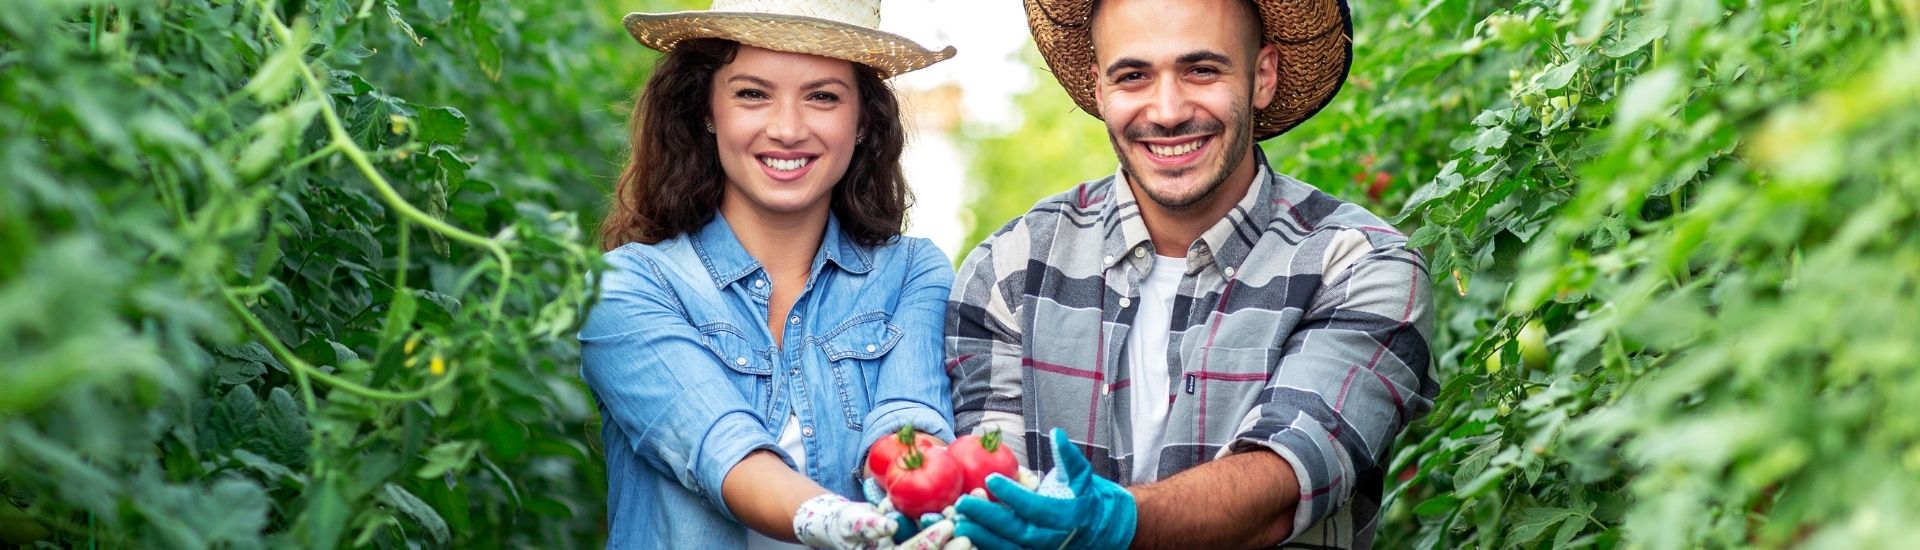 Dos personas sonrientes y en medio de un cultiven, exhiben unos frutos con sus manos extendidas